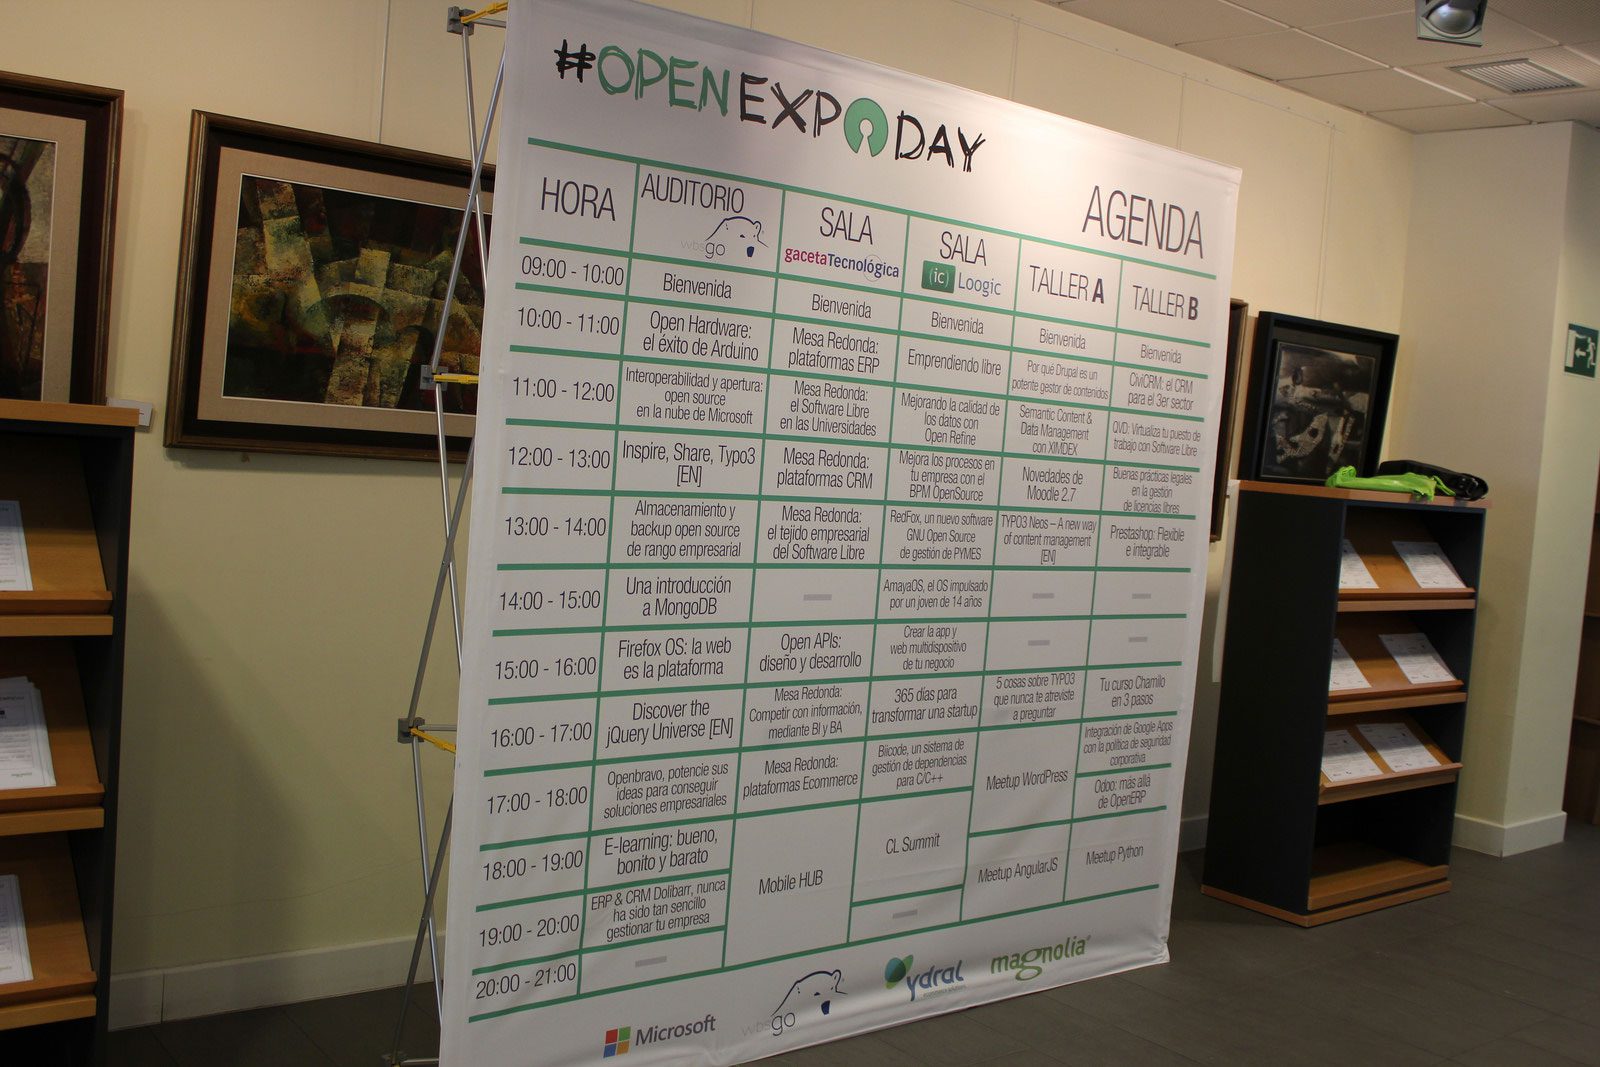 OpenExpo Day 2014